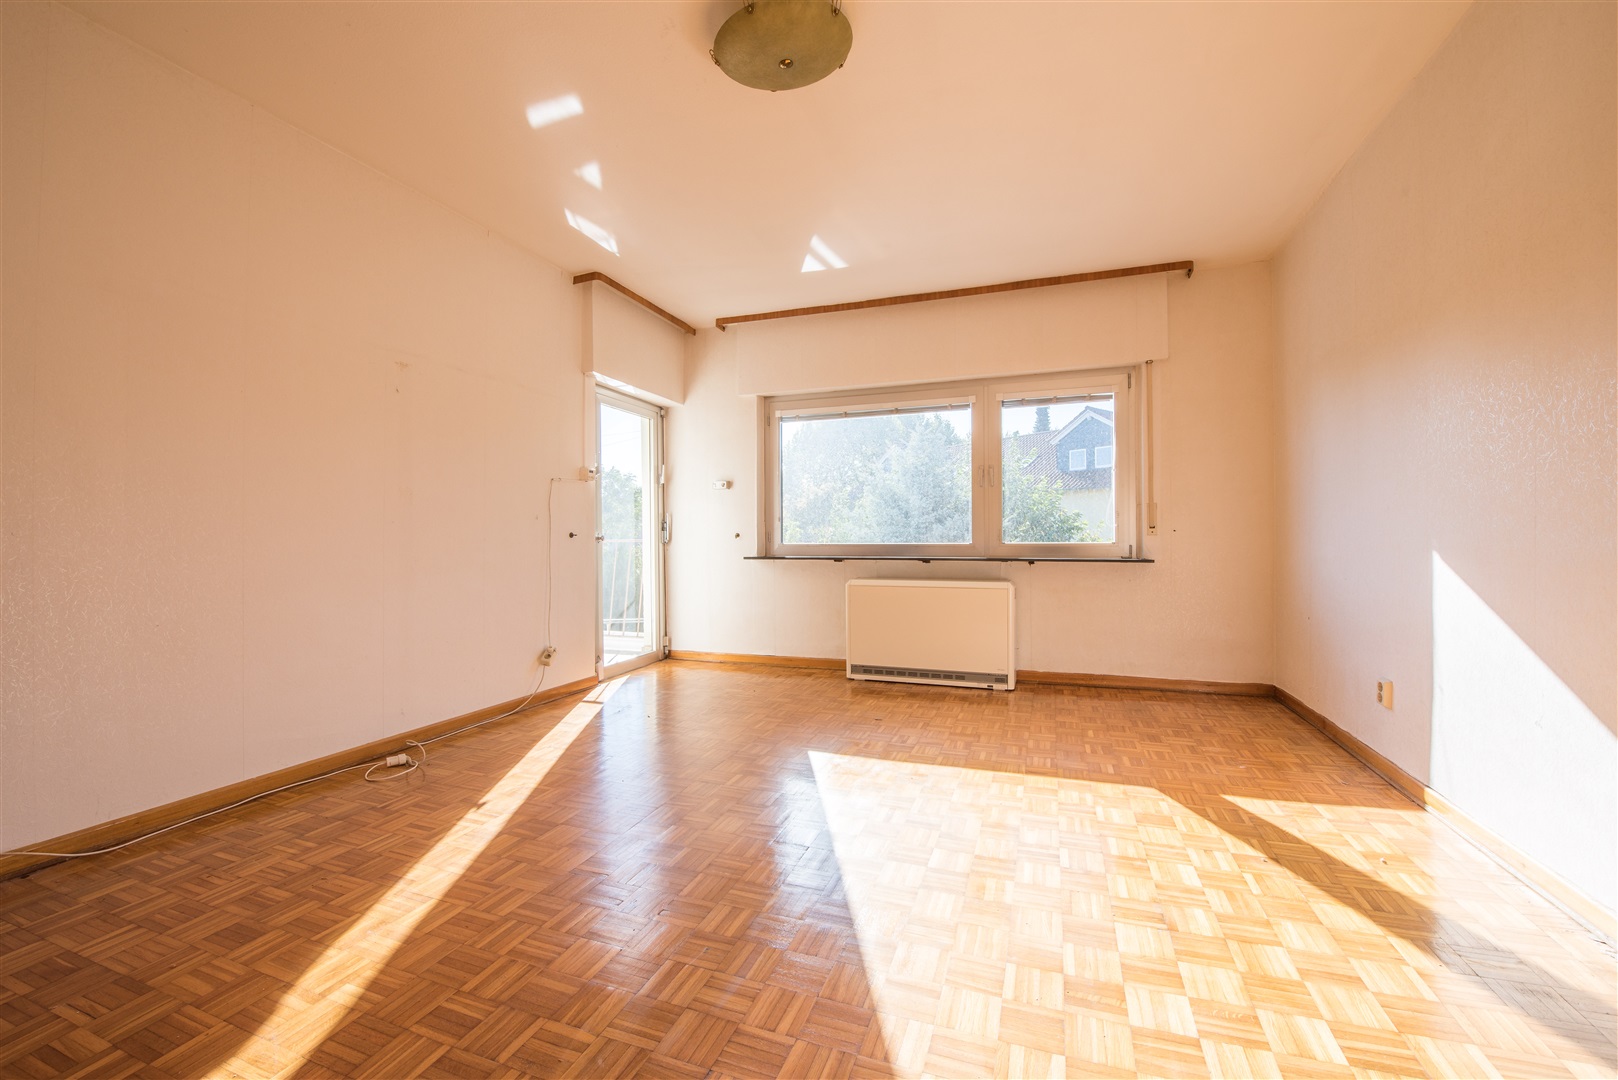 Hauptschlafzimmer der Eltern mit Zugang zum Südbalkon. - Oliver Reifferscheid - Immobilienmakler Darmstadt